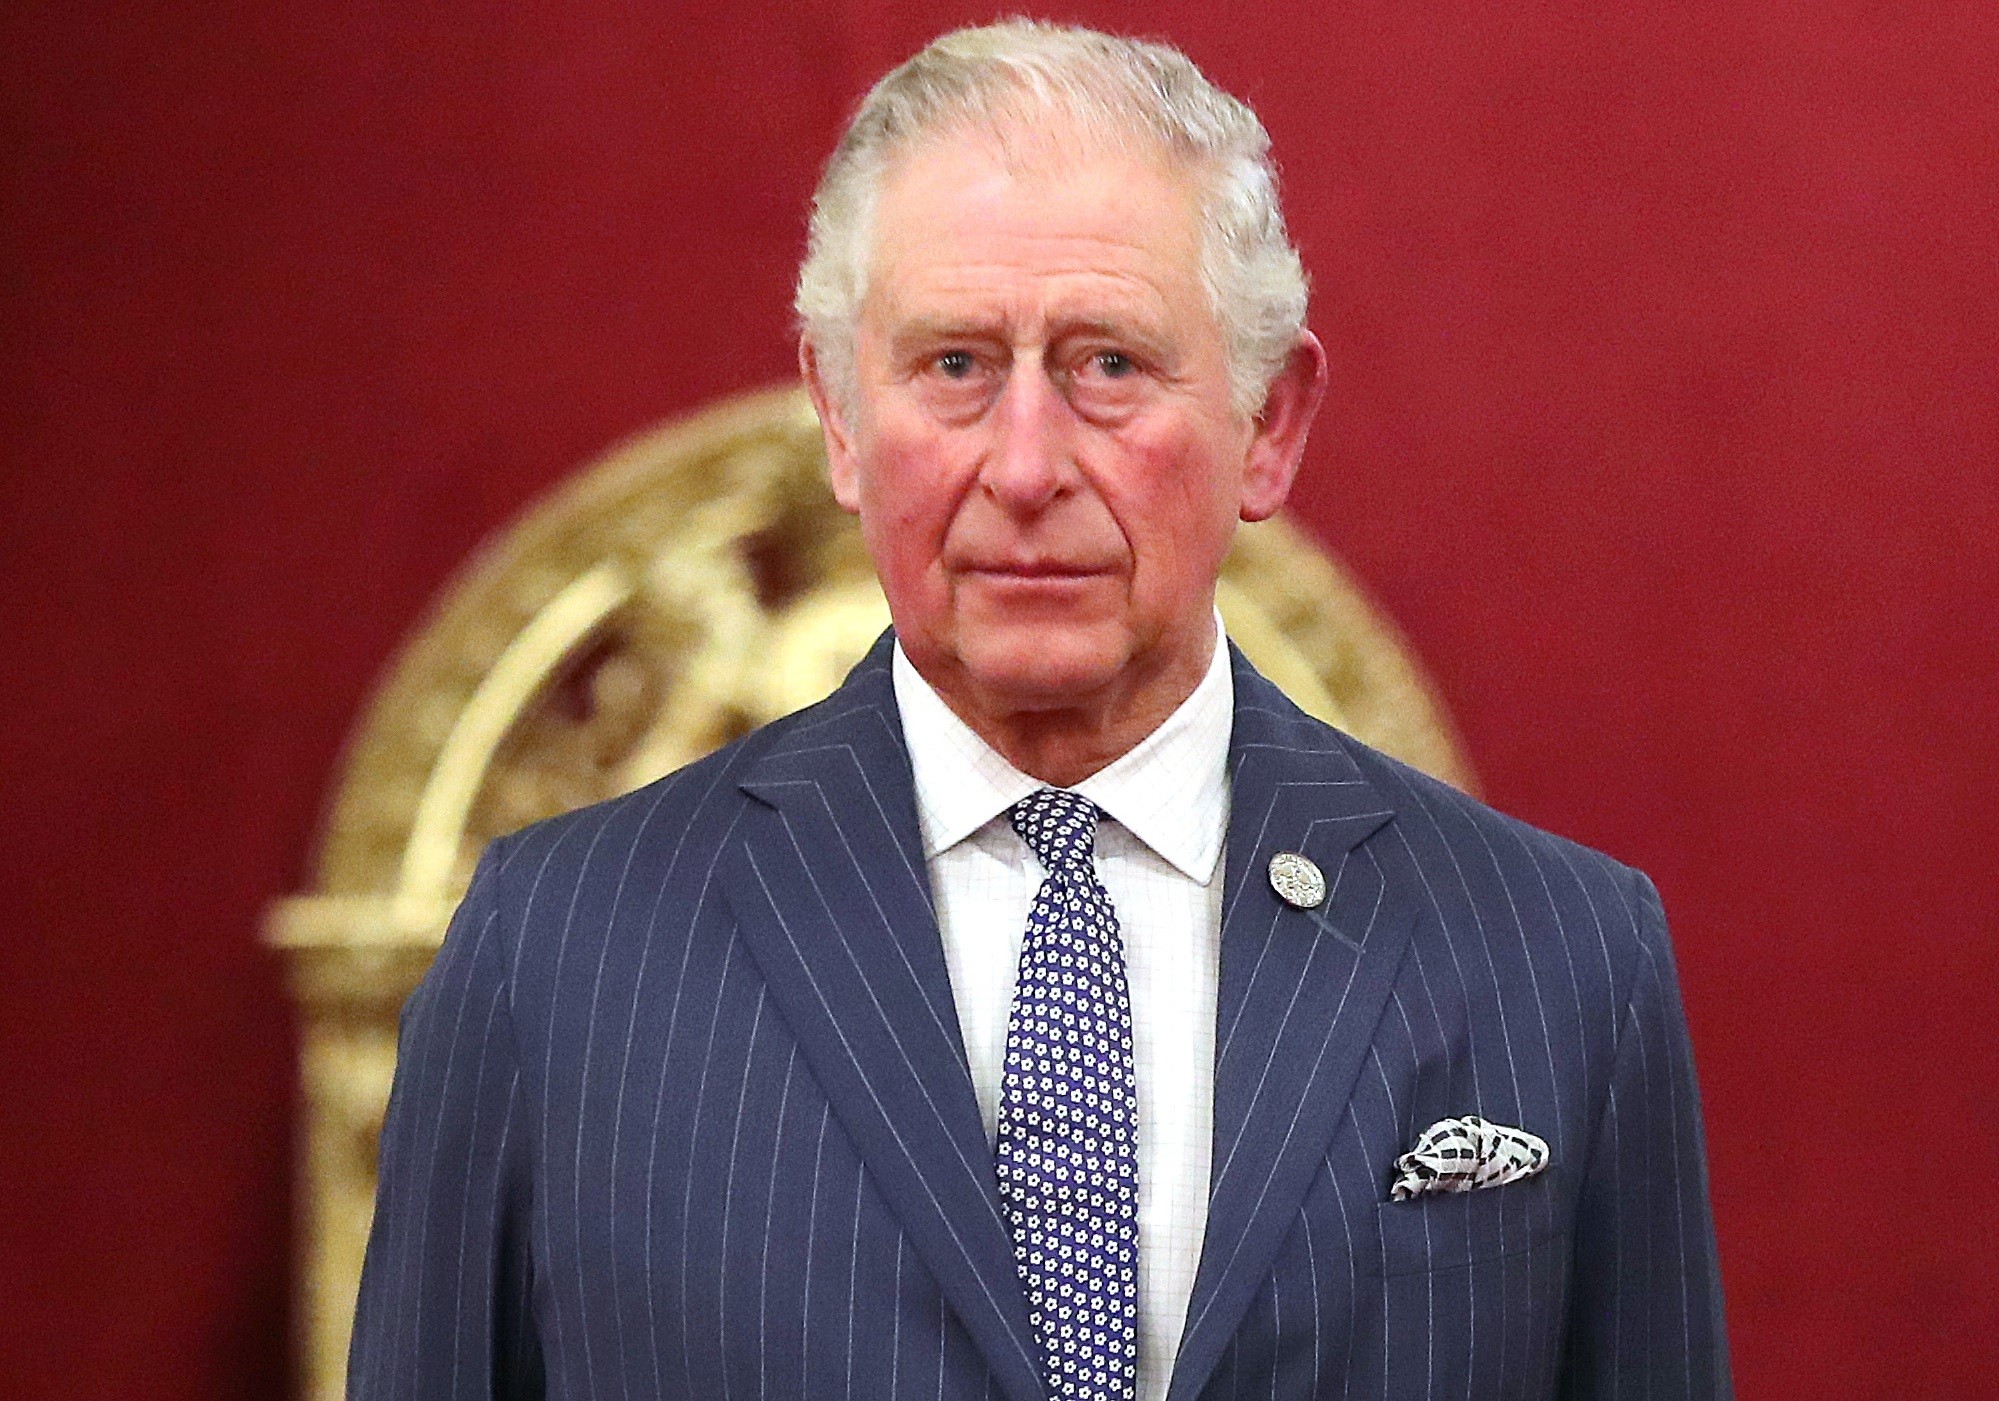 Príncipe Charles testou positivo para o novo coronavírus (Foto: Getty Images)